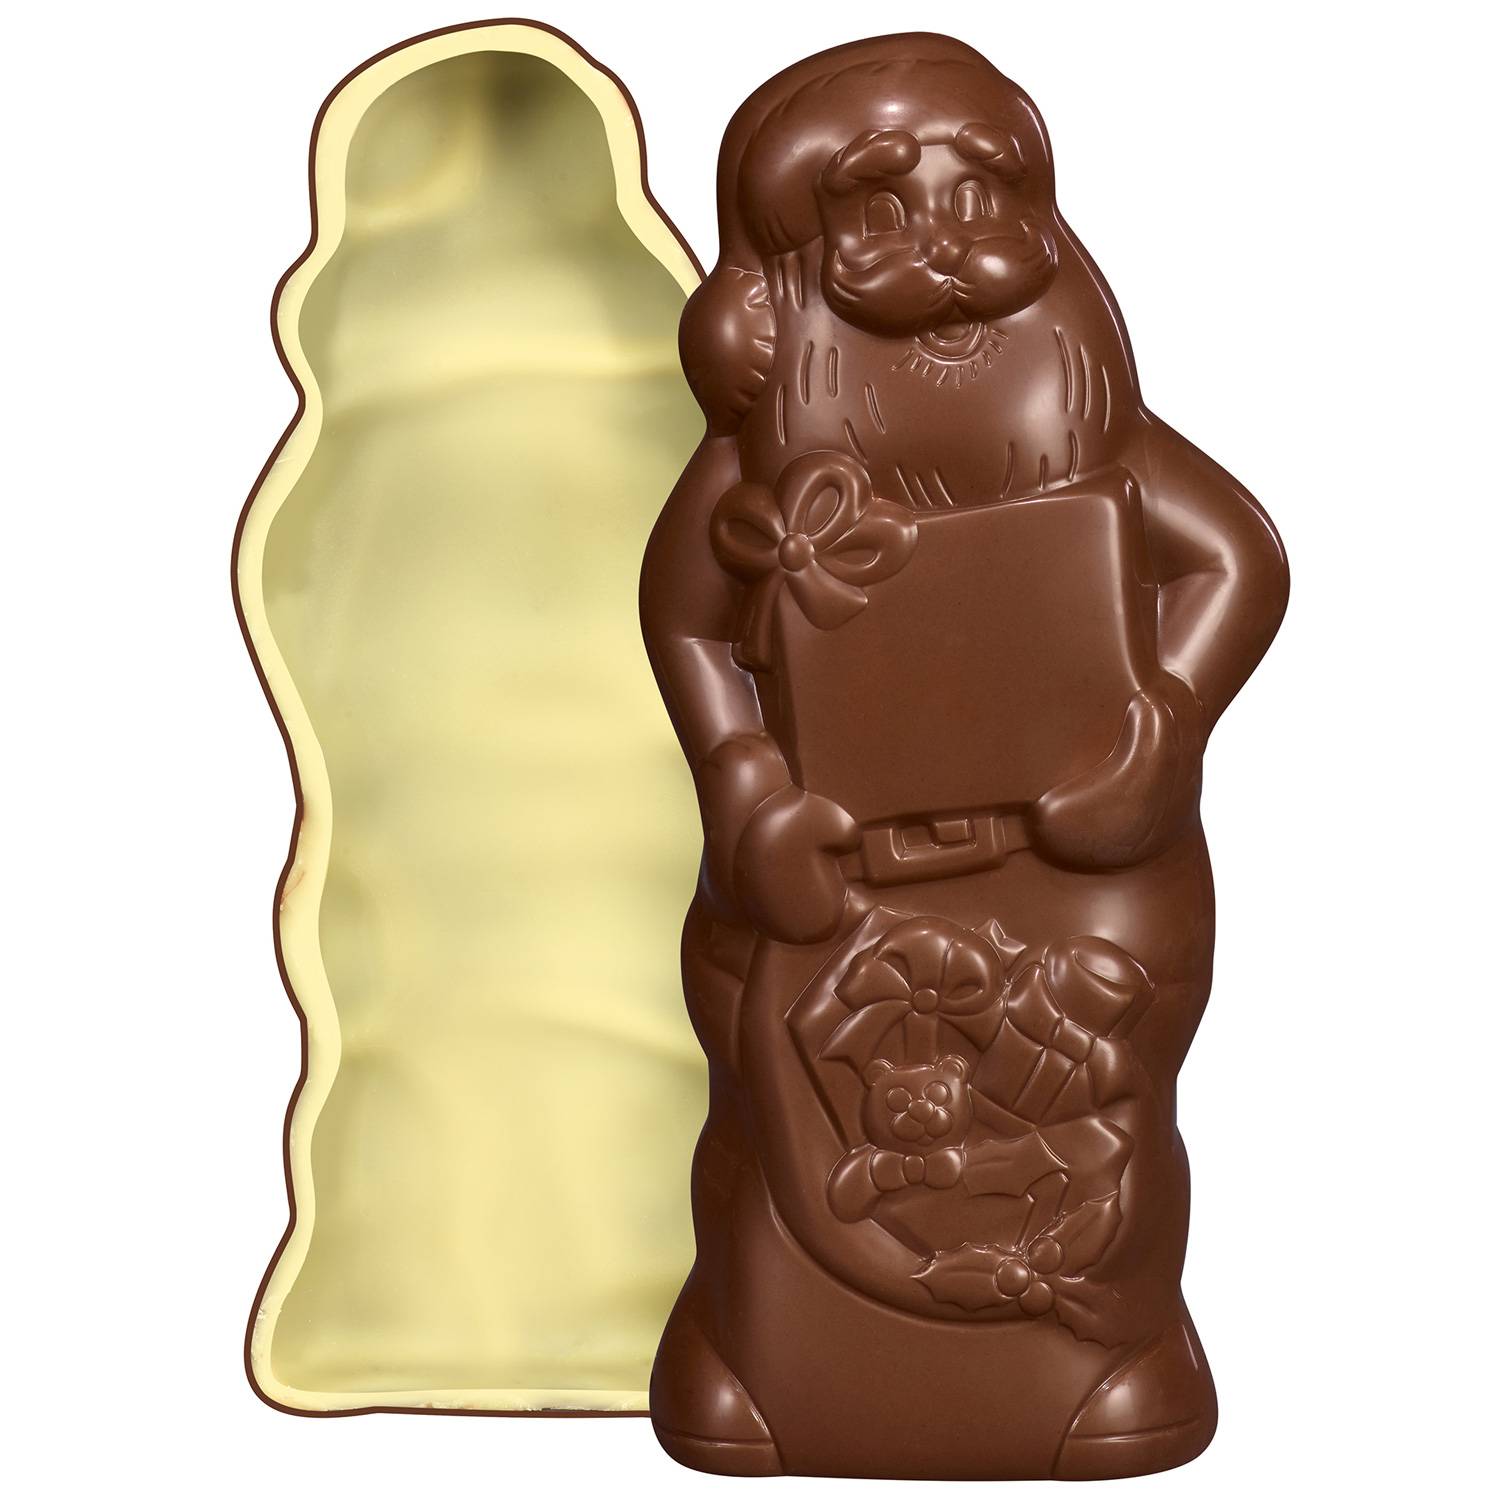 kinder Schokolade Weihnachtsmann 160g | Online kaufen im World of ...